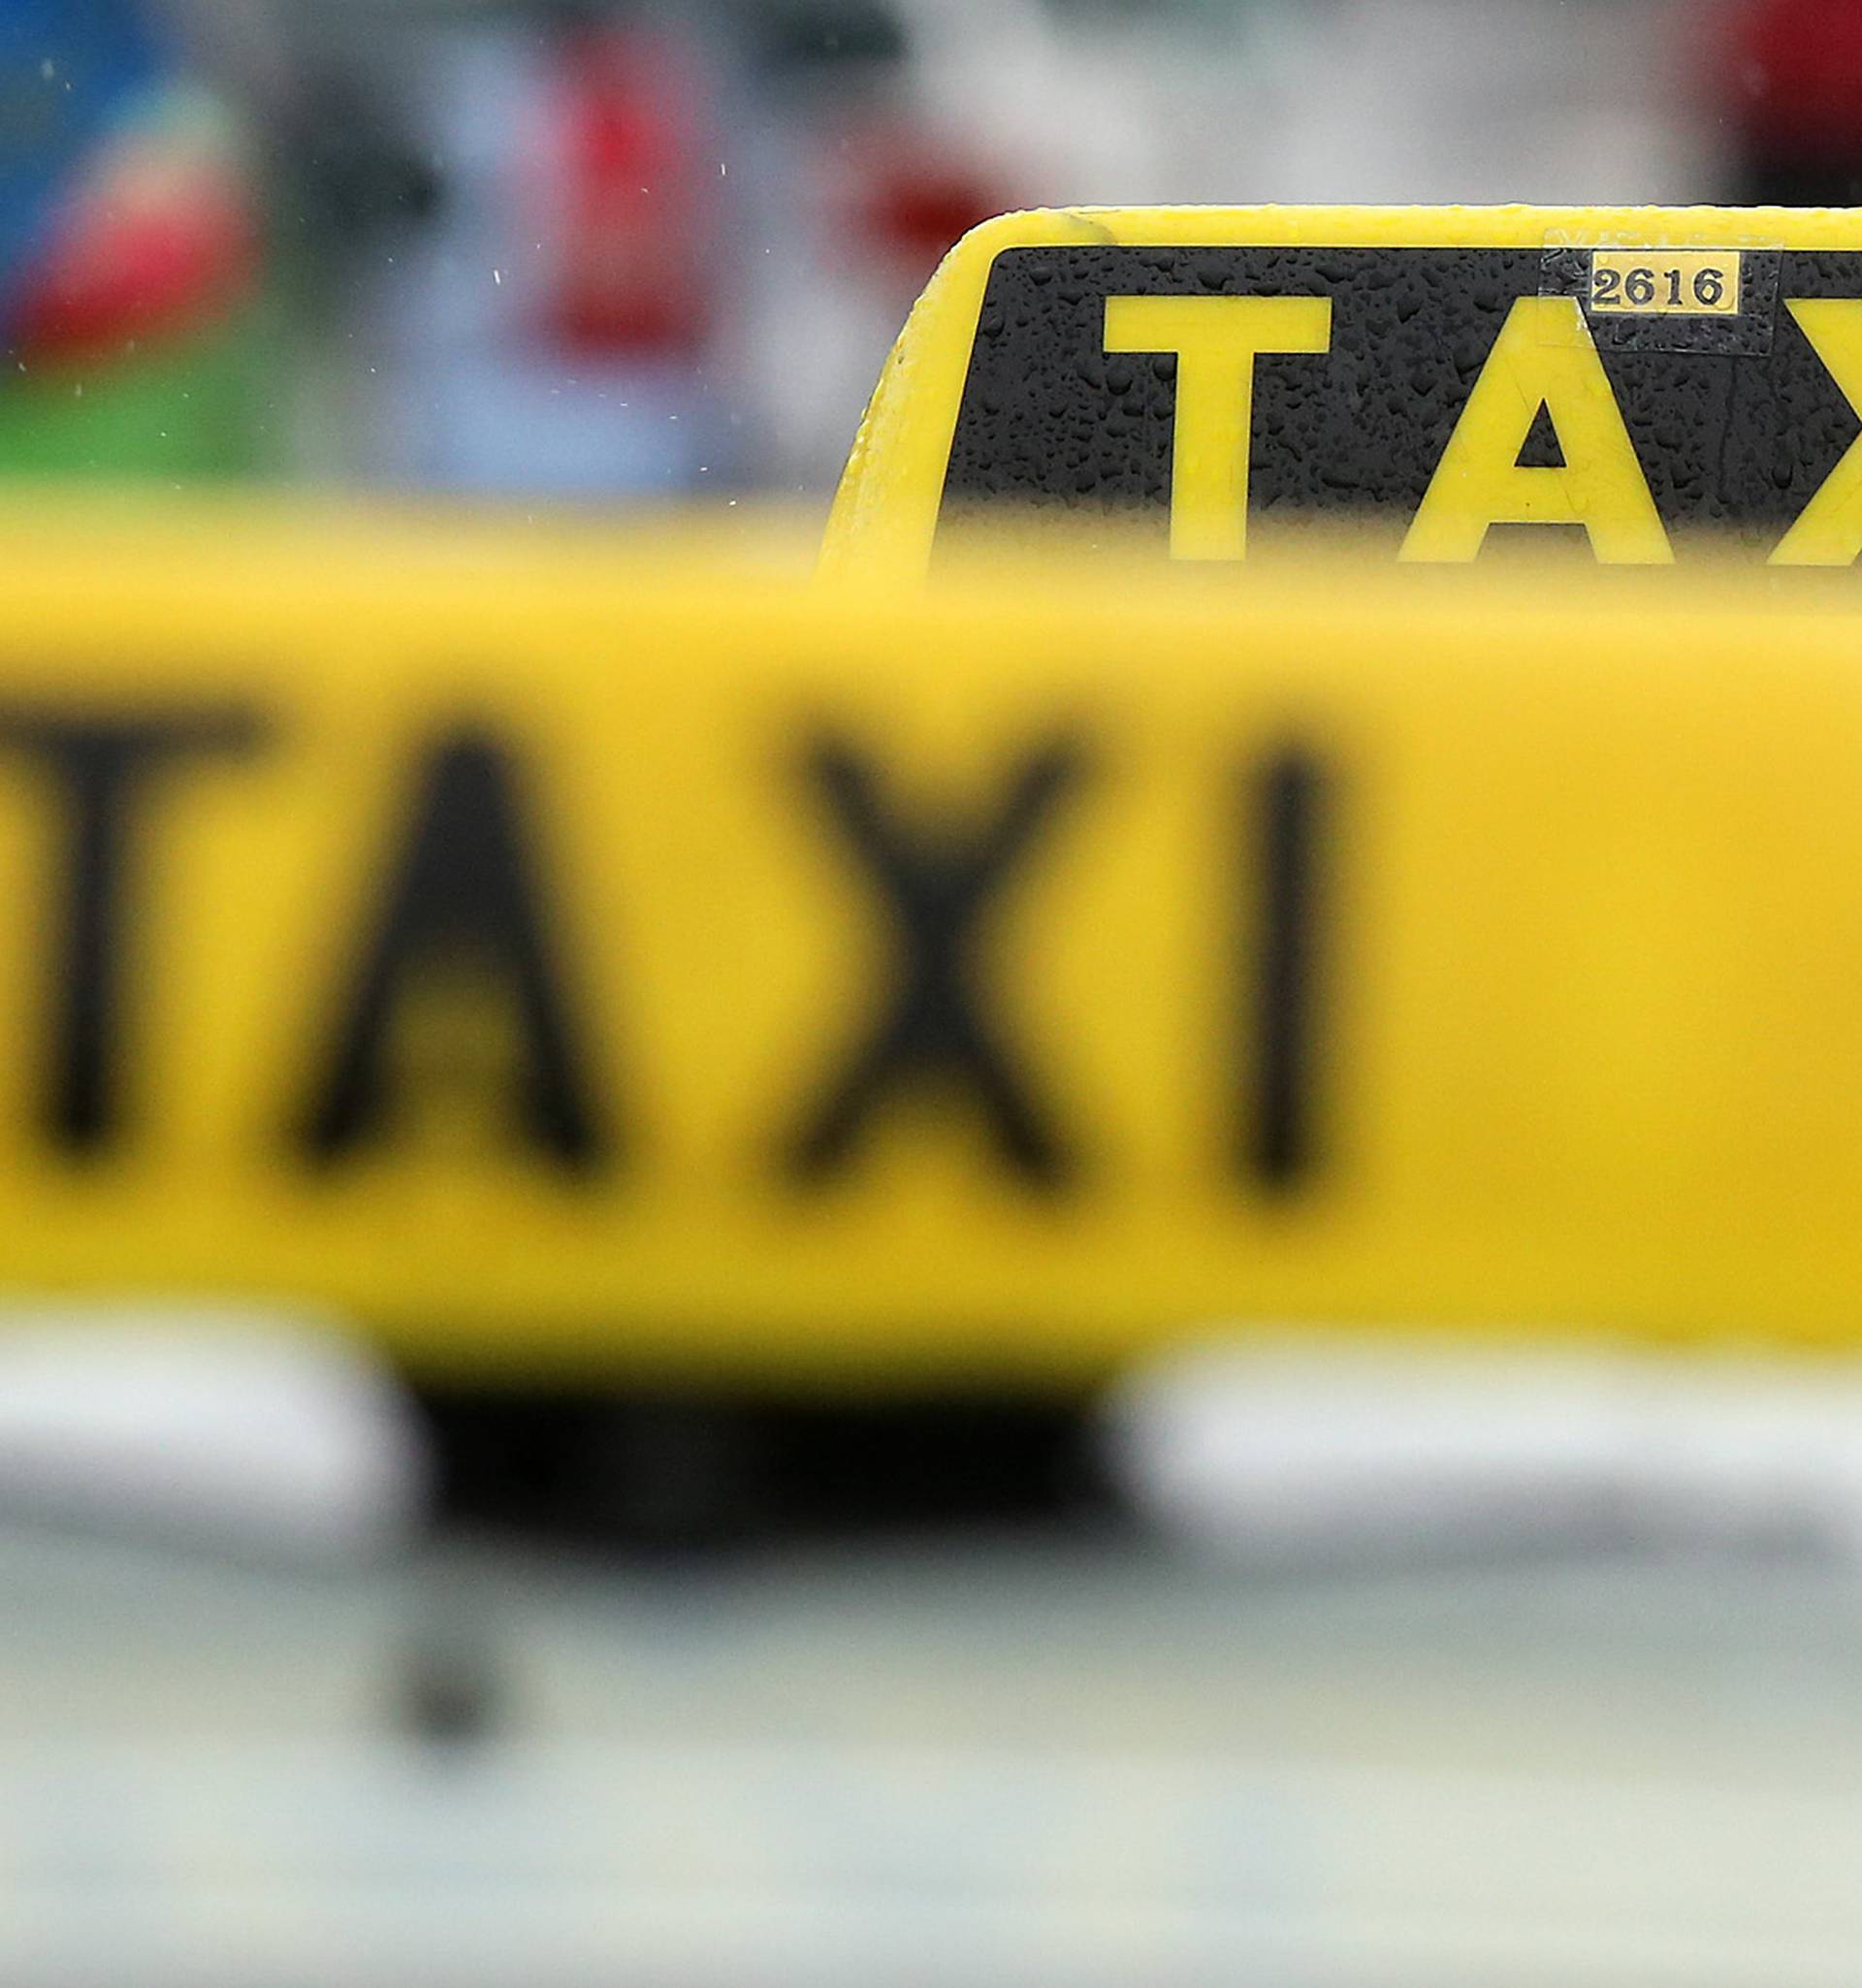 Borba protiv Ubera: Taksisti će u petak ljude voziti besplatno